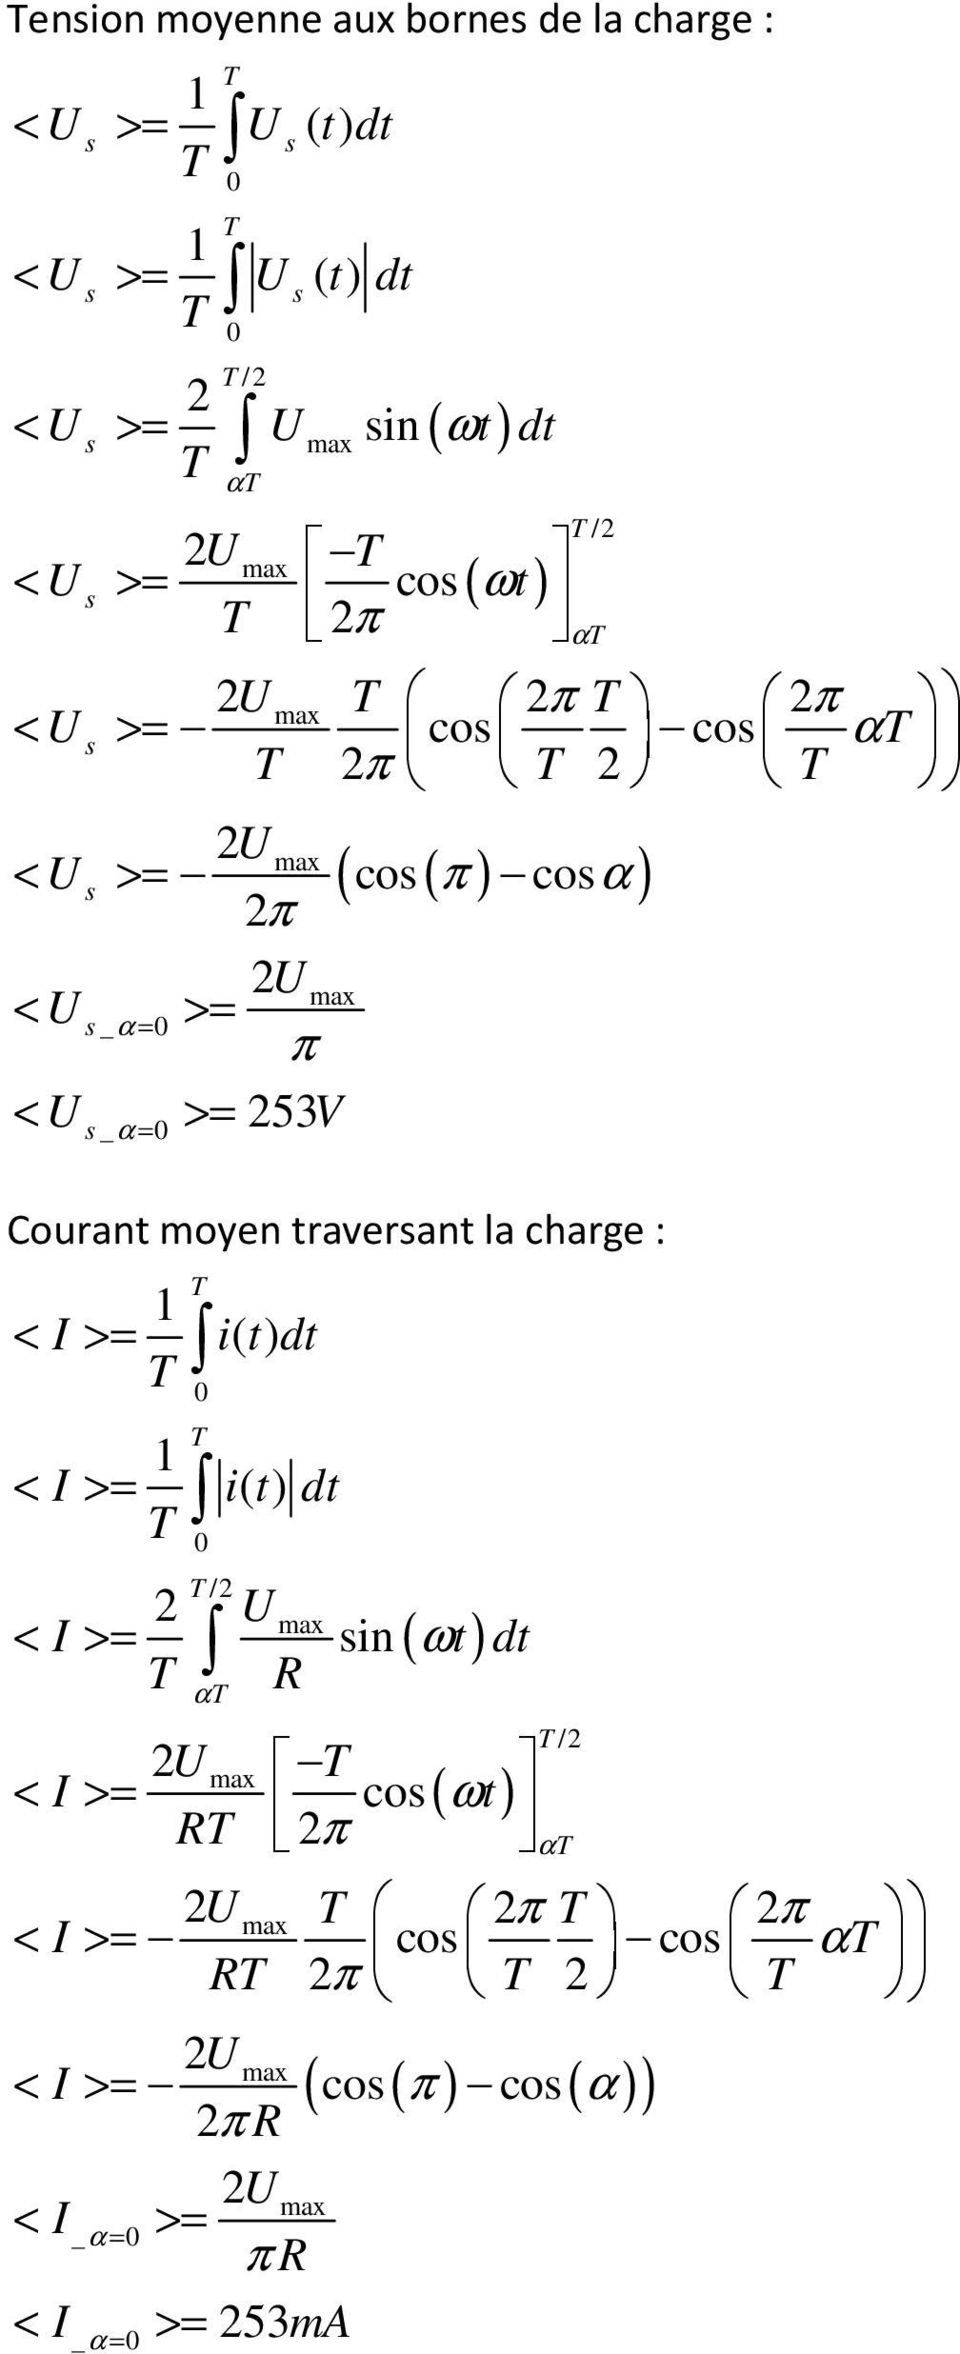 Courant moyen traverant la charge : 1 < I >= 1 < I >= 2 < I >= 0 0 /2 2U < I >= R ( ω ) ( ωt) /2 < I >= ( co( π ) co (